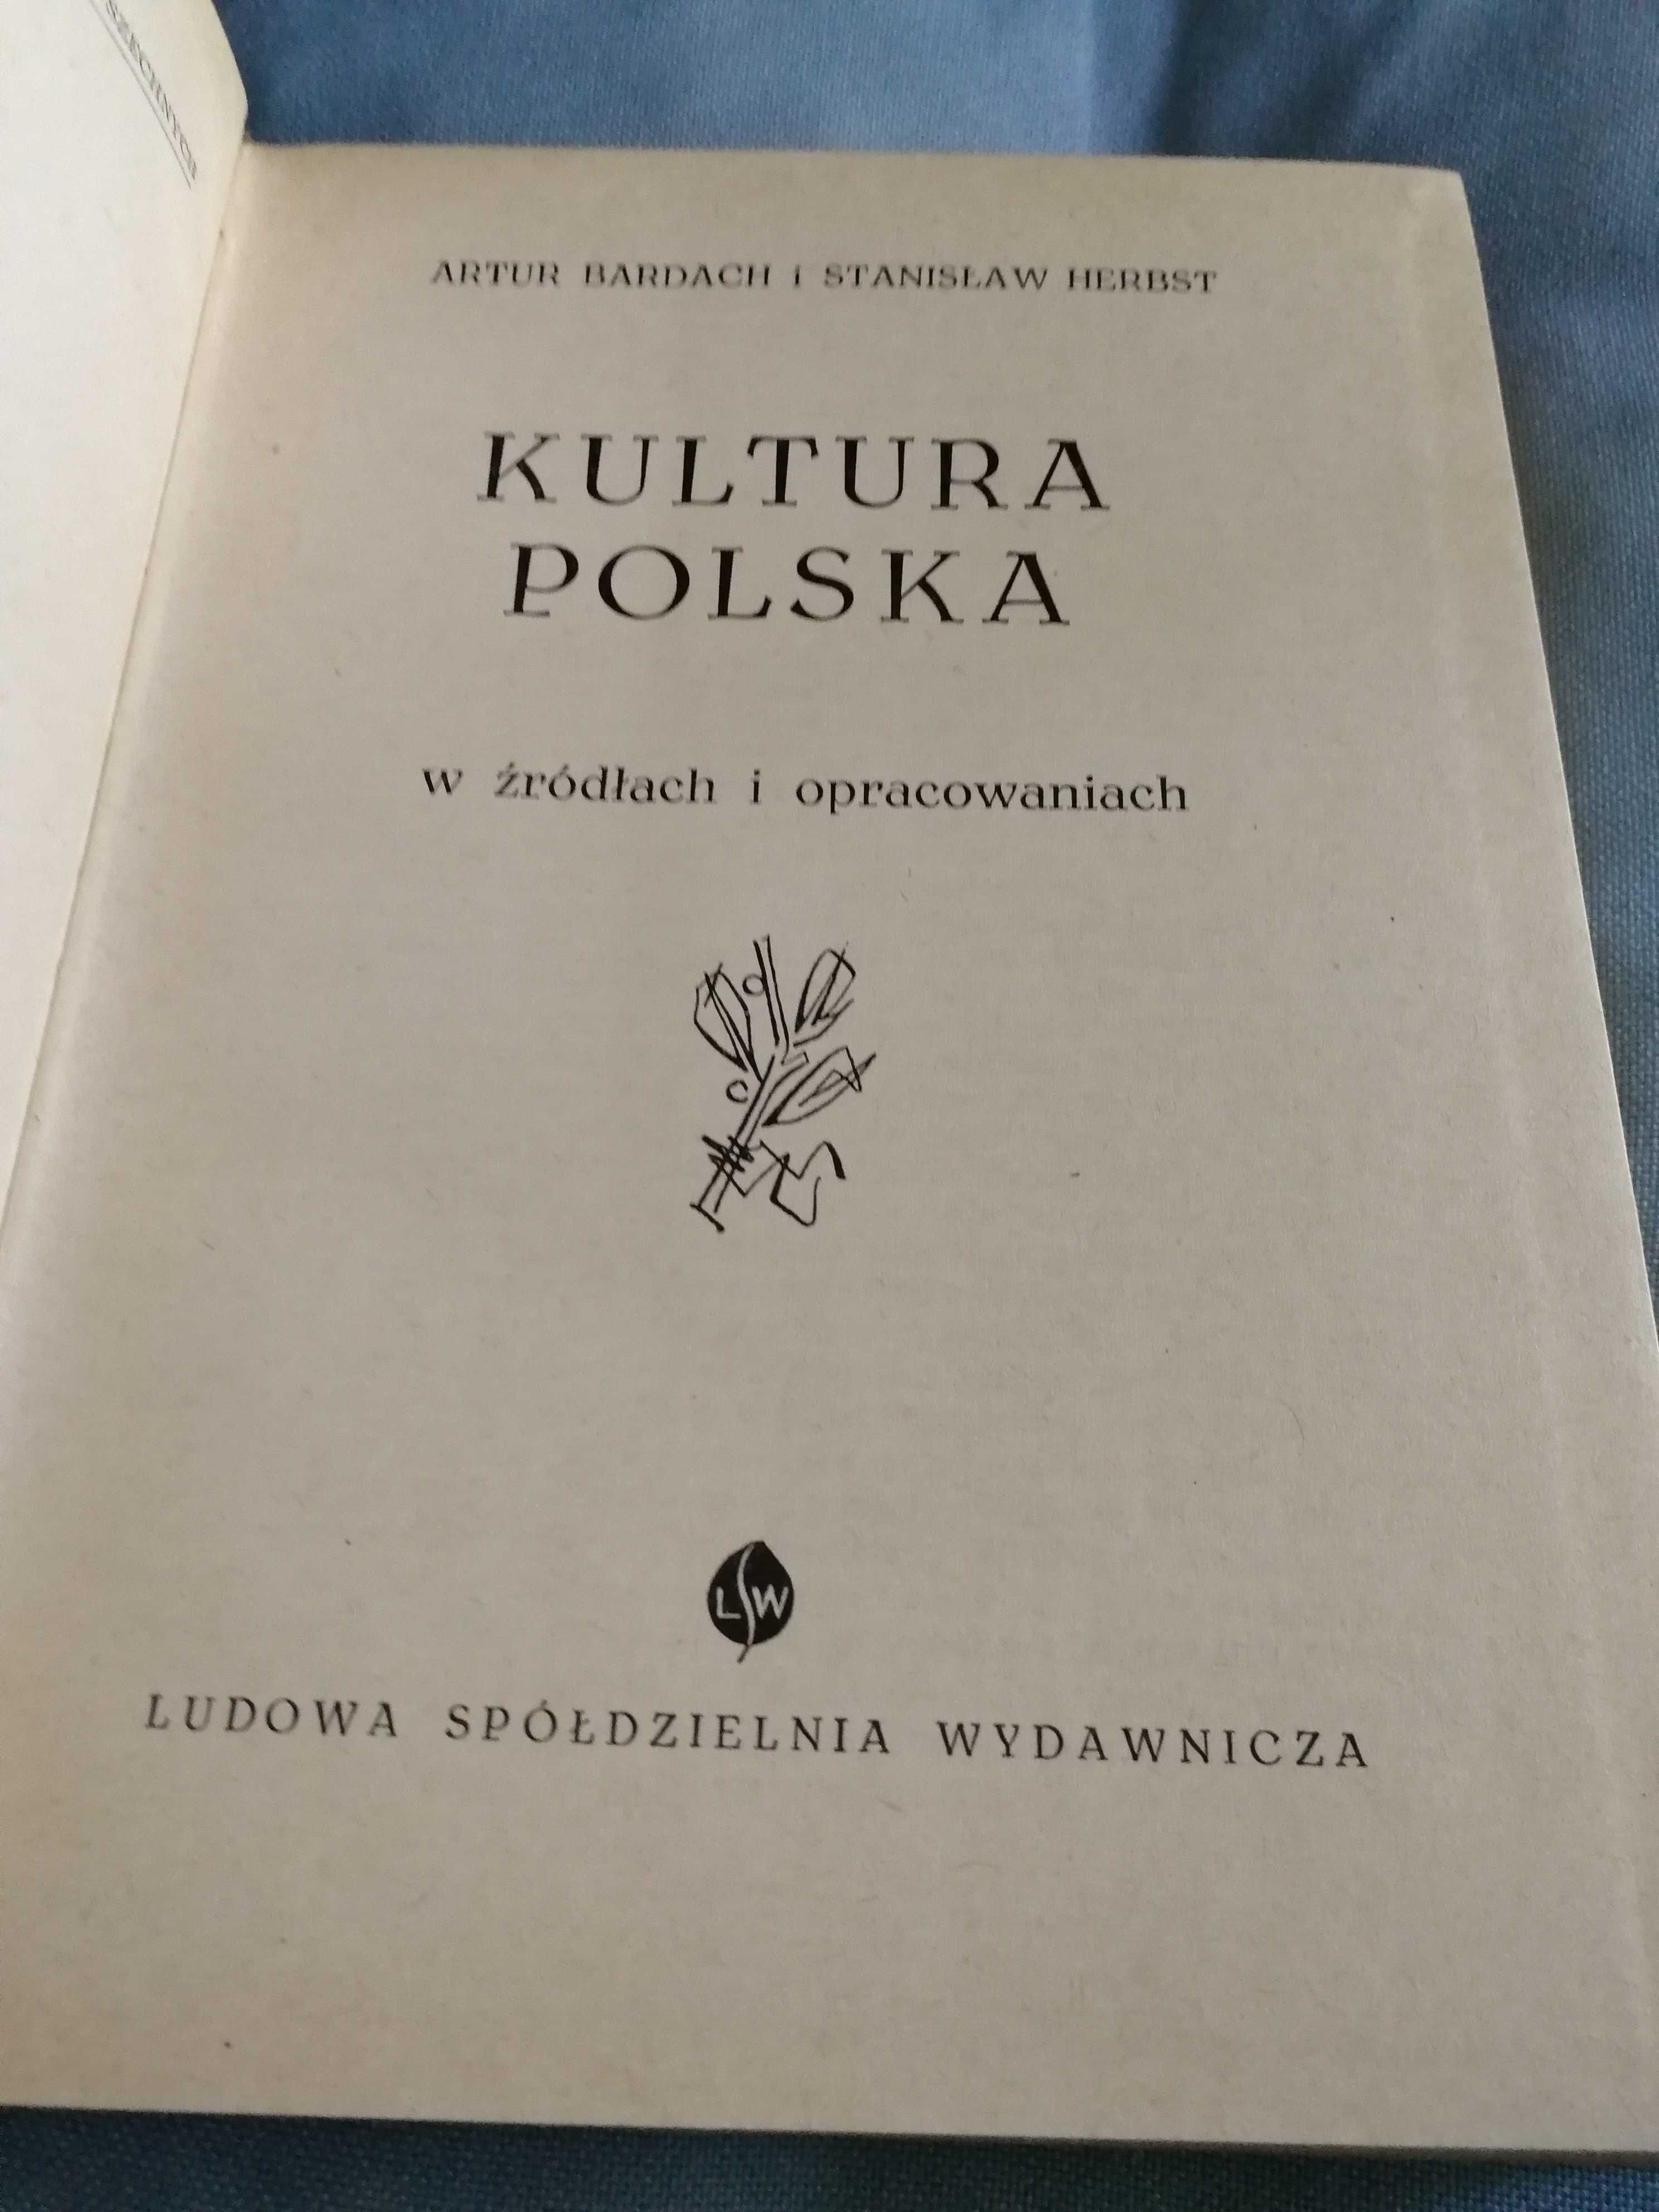 Kultura polska - Artur Bardach, Stanisław Herbst, L\SW, 1961